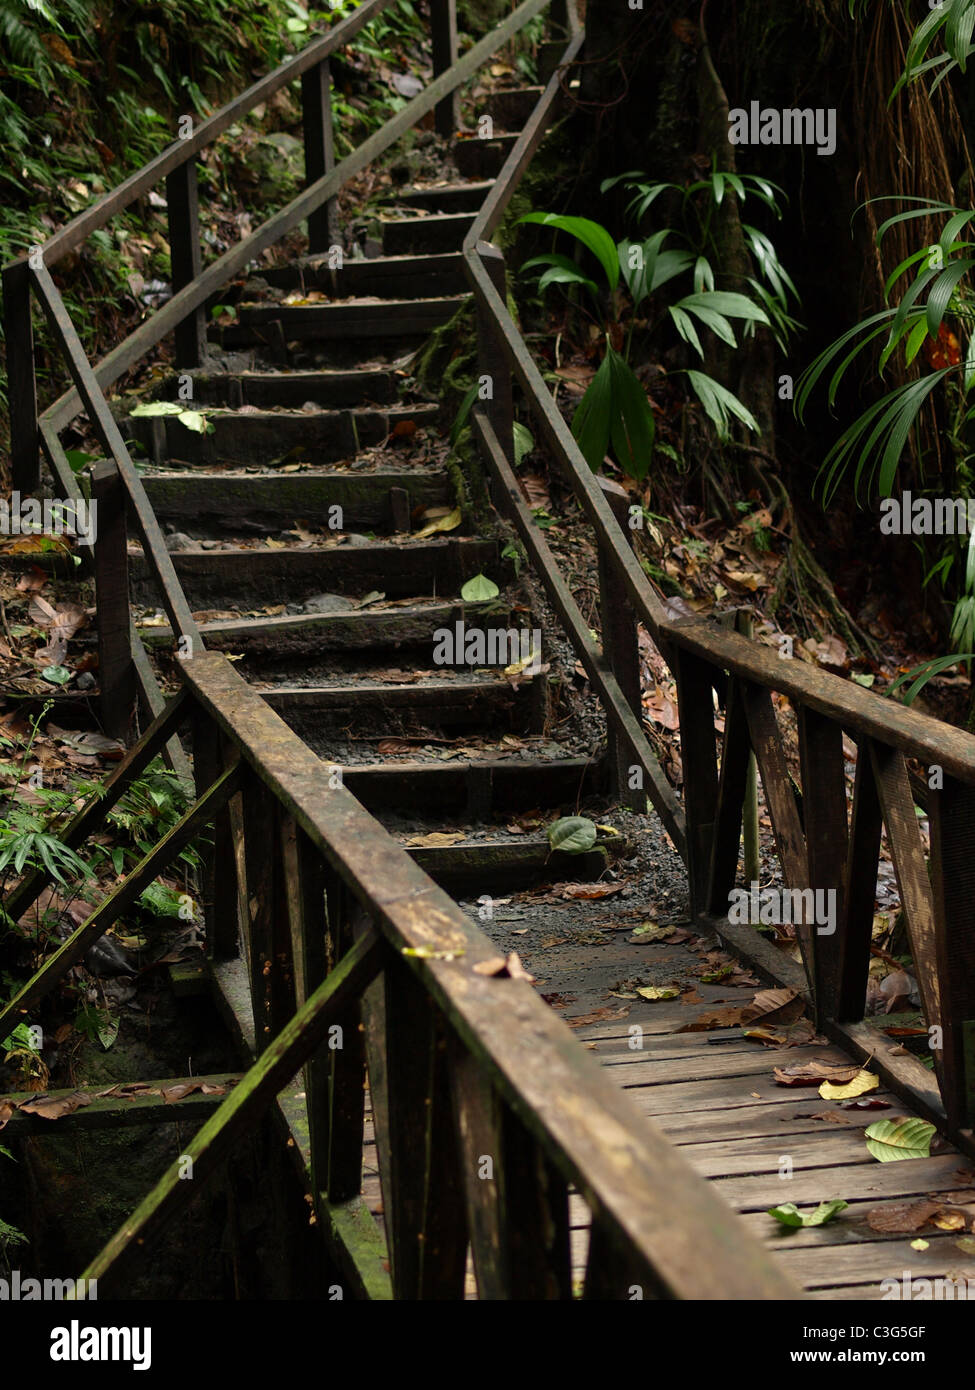 Les escaliers en bois menant à l'Emerald Pool, une visite touristique populaire dans le Commonwealth de la Dominique, les Antilles, les Caraïbes. Banque D'Images